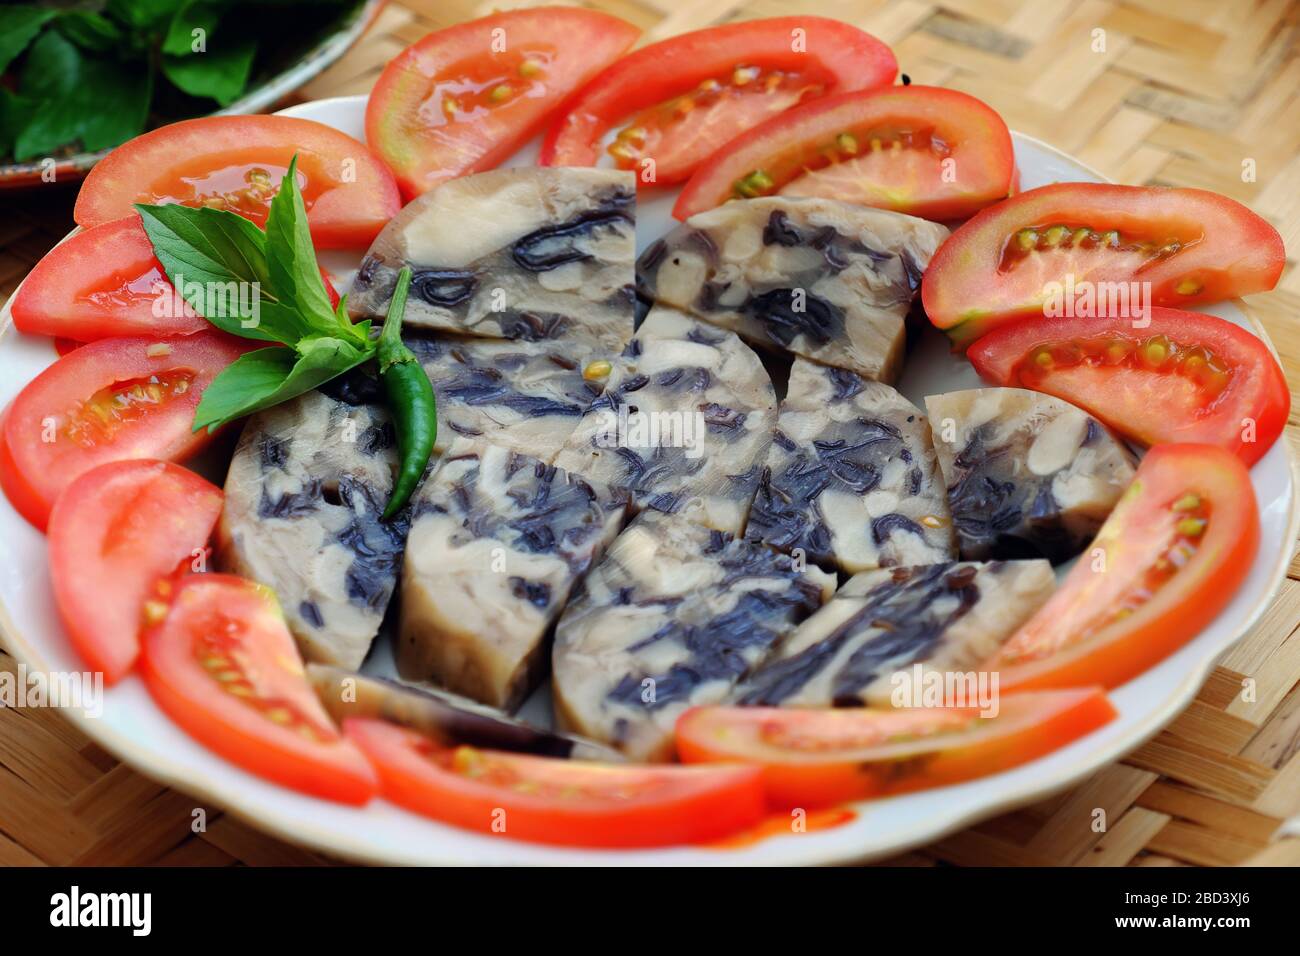 Assiette de repas végétalien pour végétarien, tarte végétalienne à base de champignons blancs en paille, oreille en bois, champignons noirs avec gelée, nourriture vietnamienne coupée en tranche avec tomate Banque D'Images